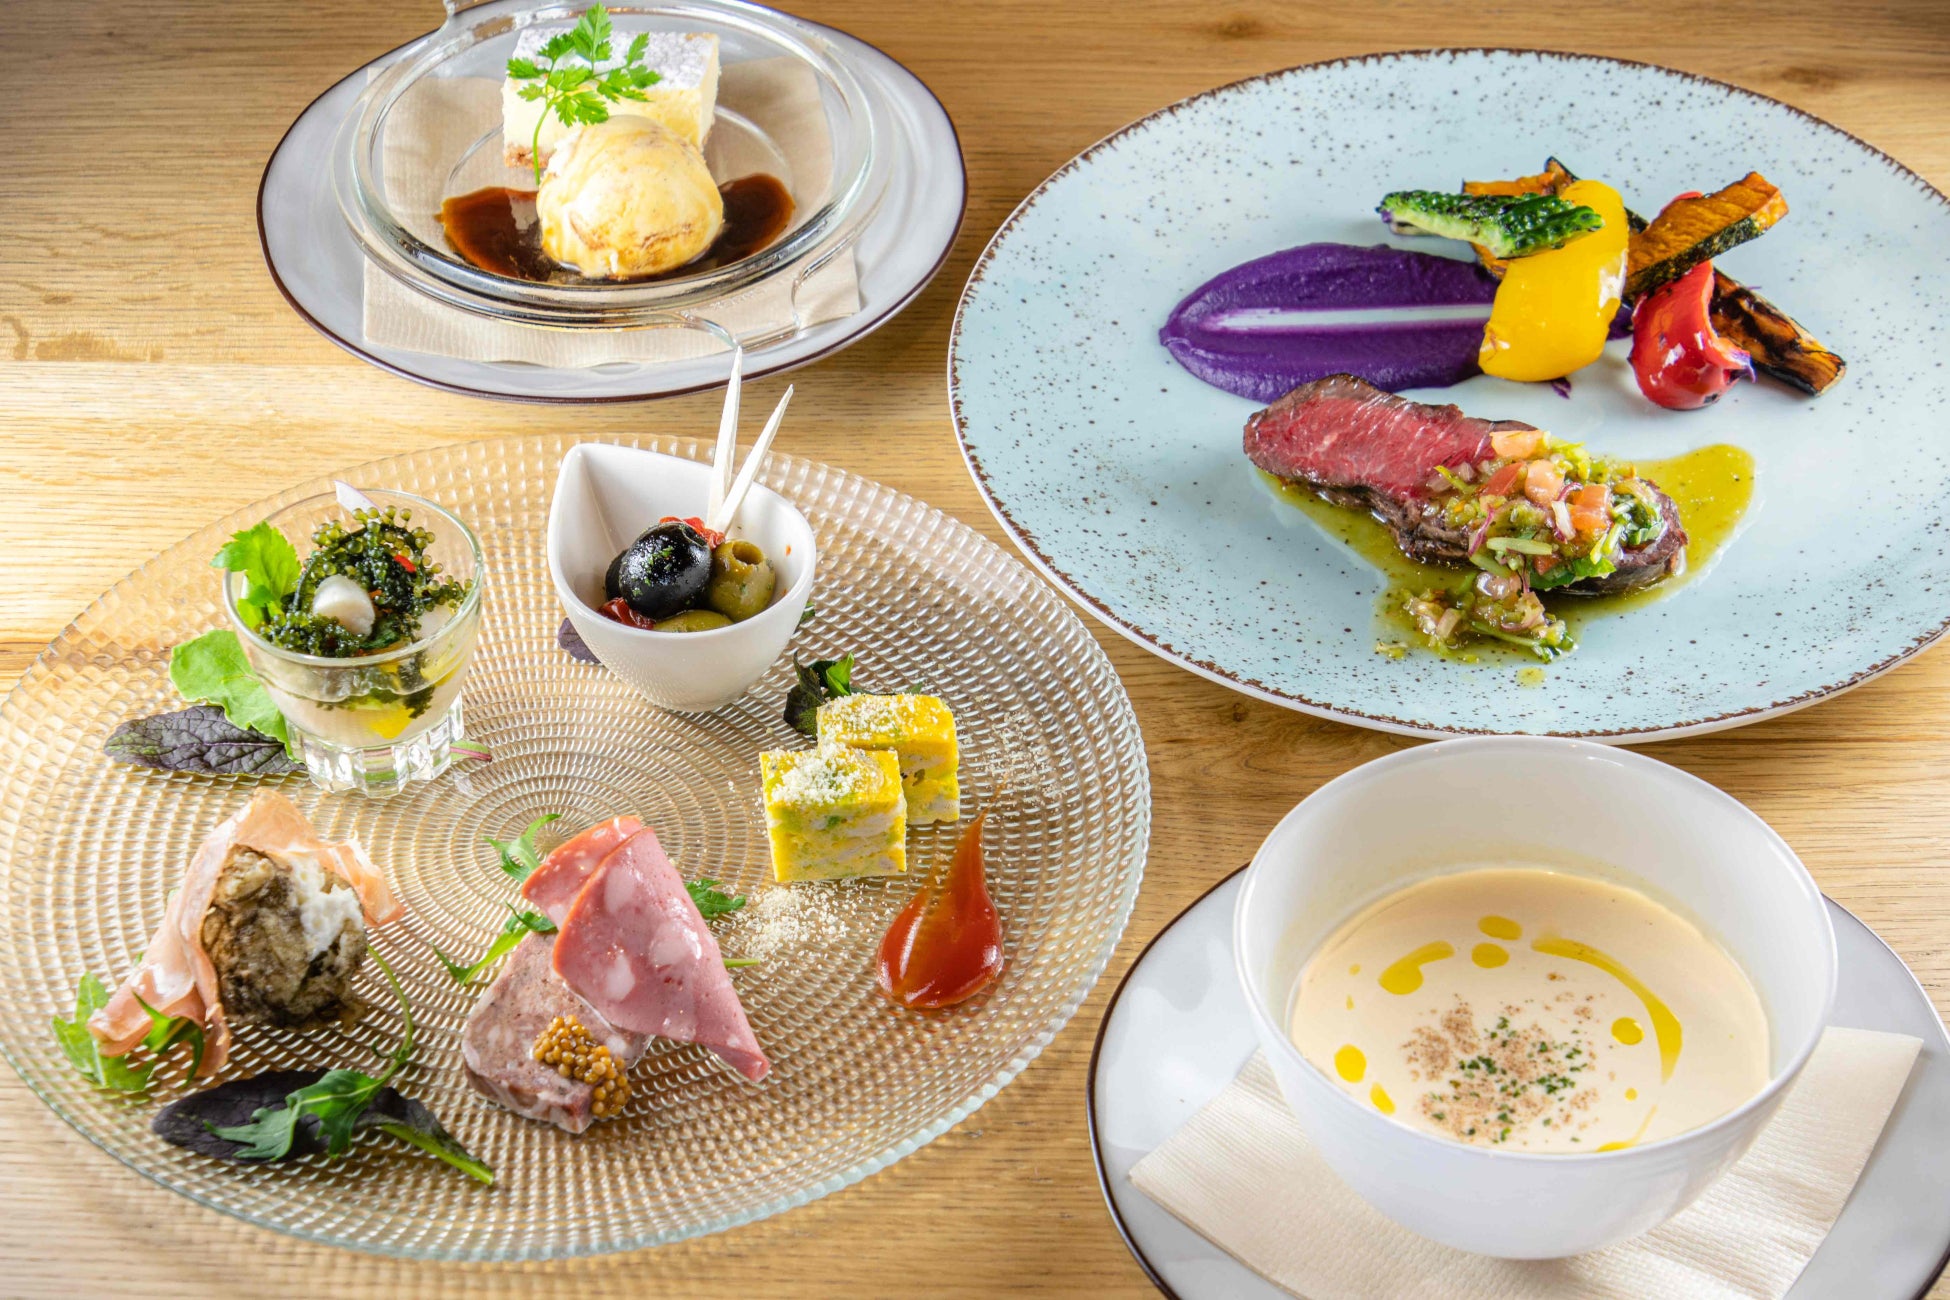 東京駅隣接の総合観光案内所「TIC TOKYO」が、地域食材を用いたメニューをレストランでご提供する「宮古島ランチフェア」を開催